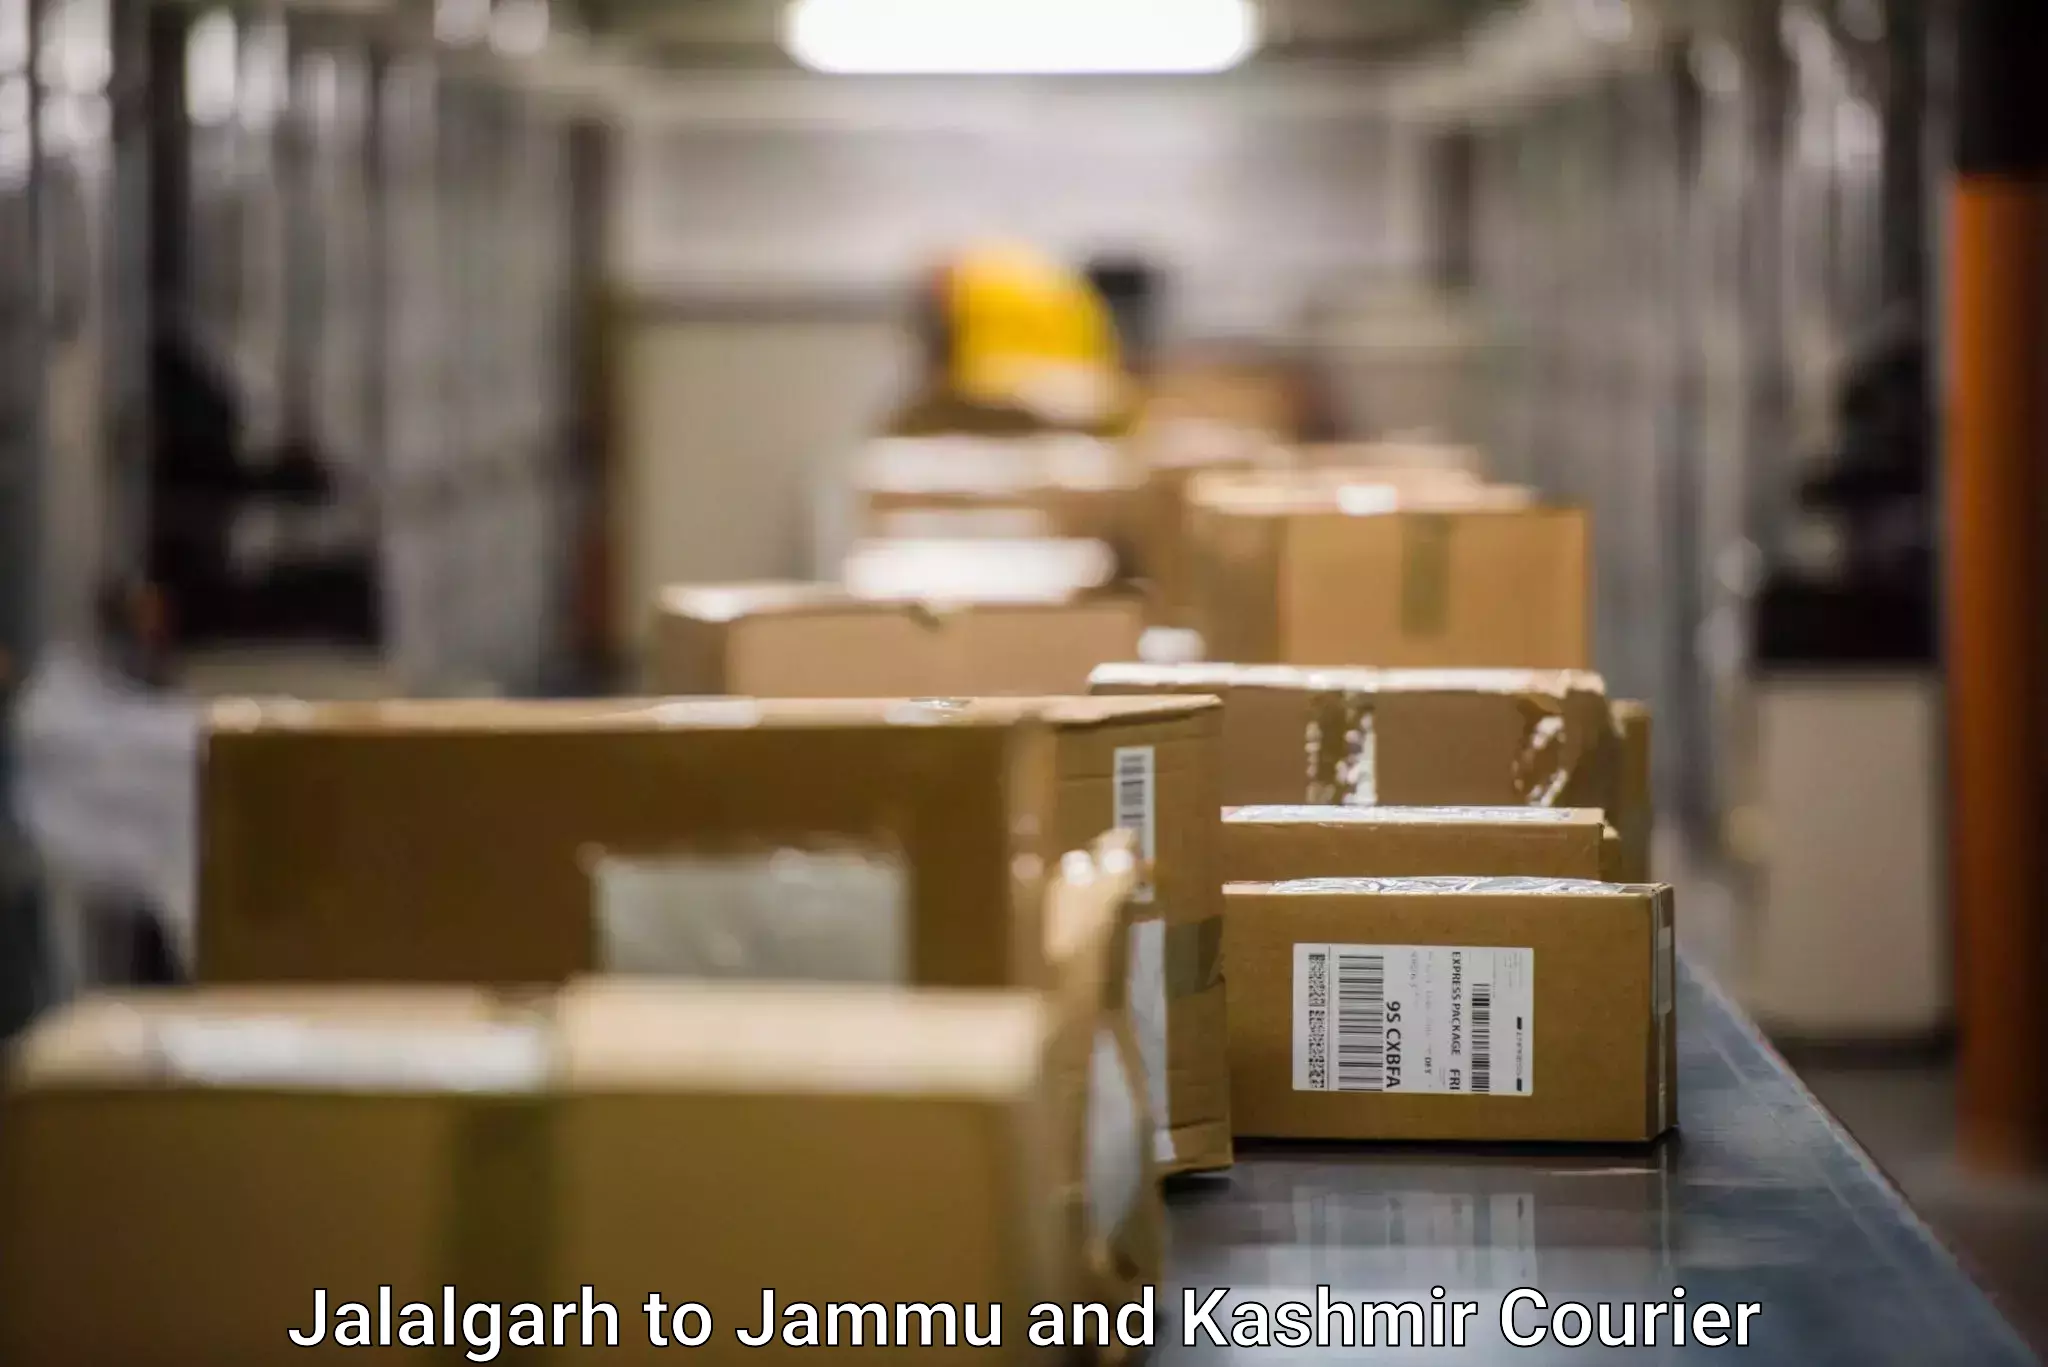 Efficient parcel service Jalalgarh to Shopian